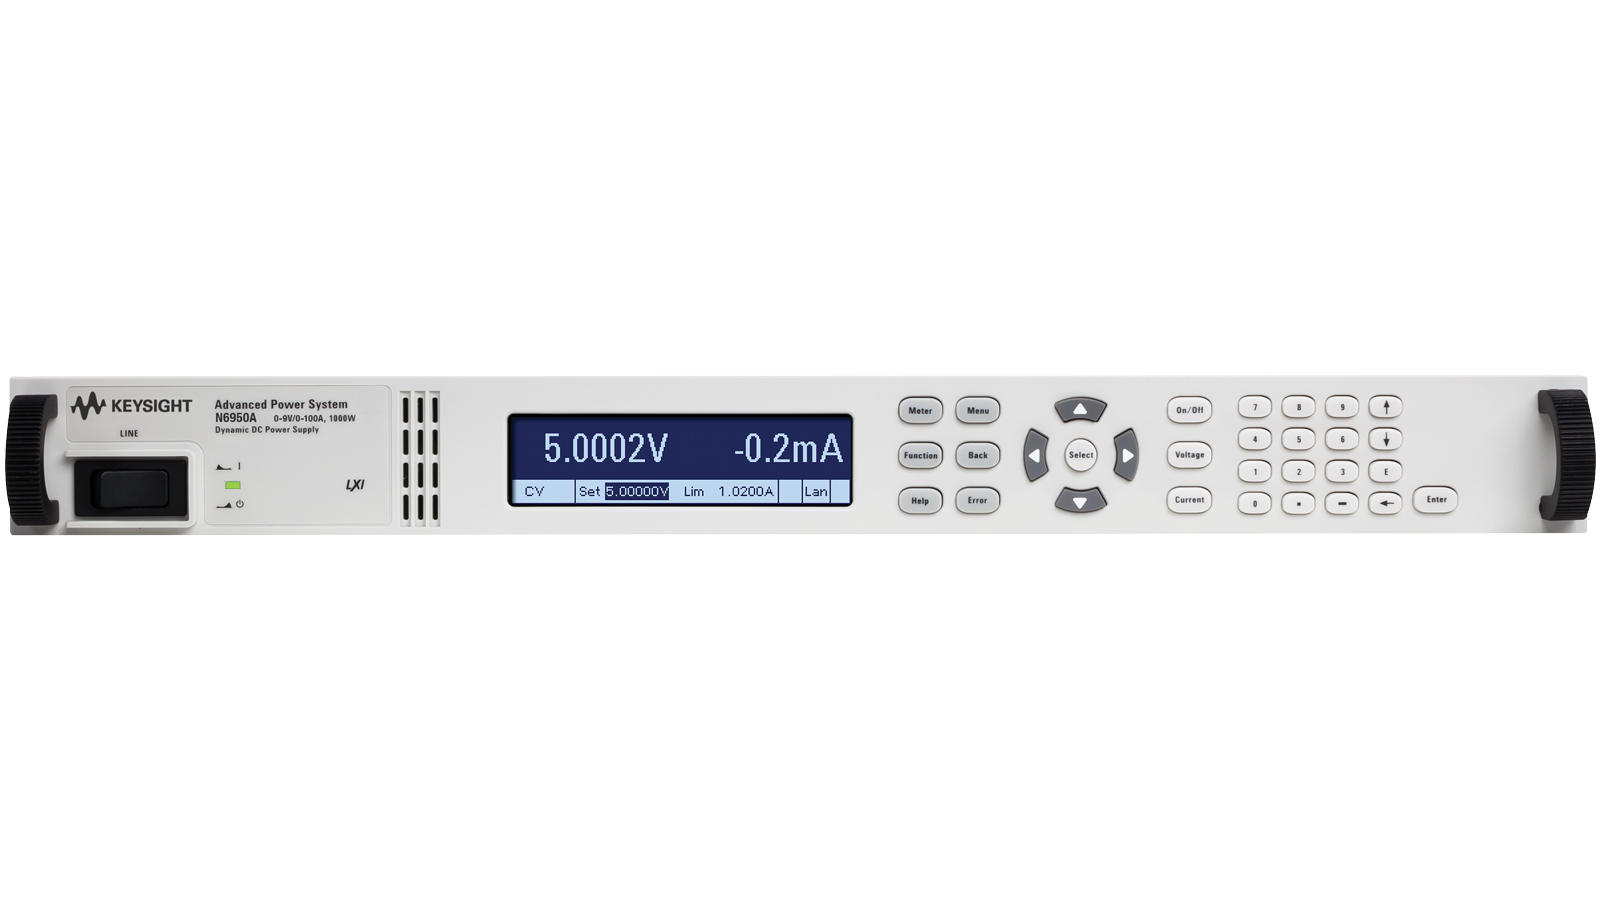 N6900 系列 APS，進階電源系統